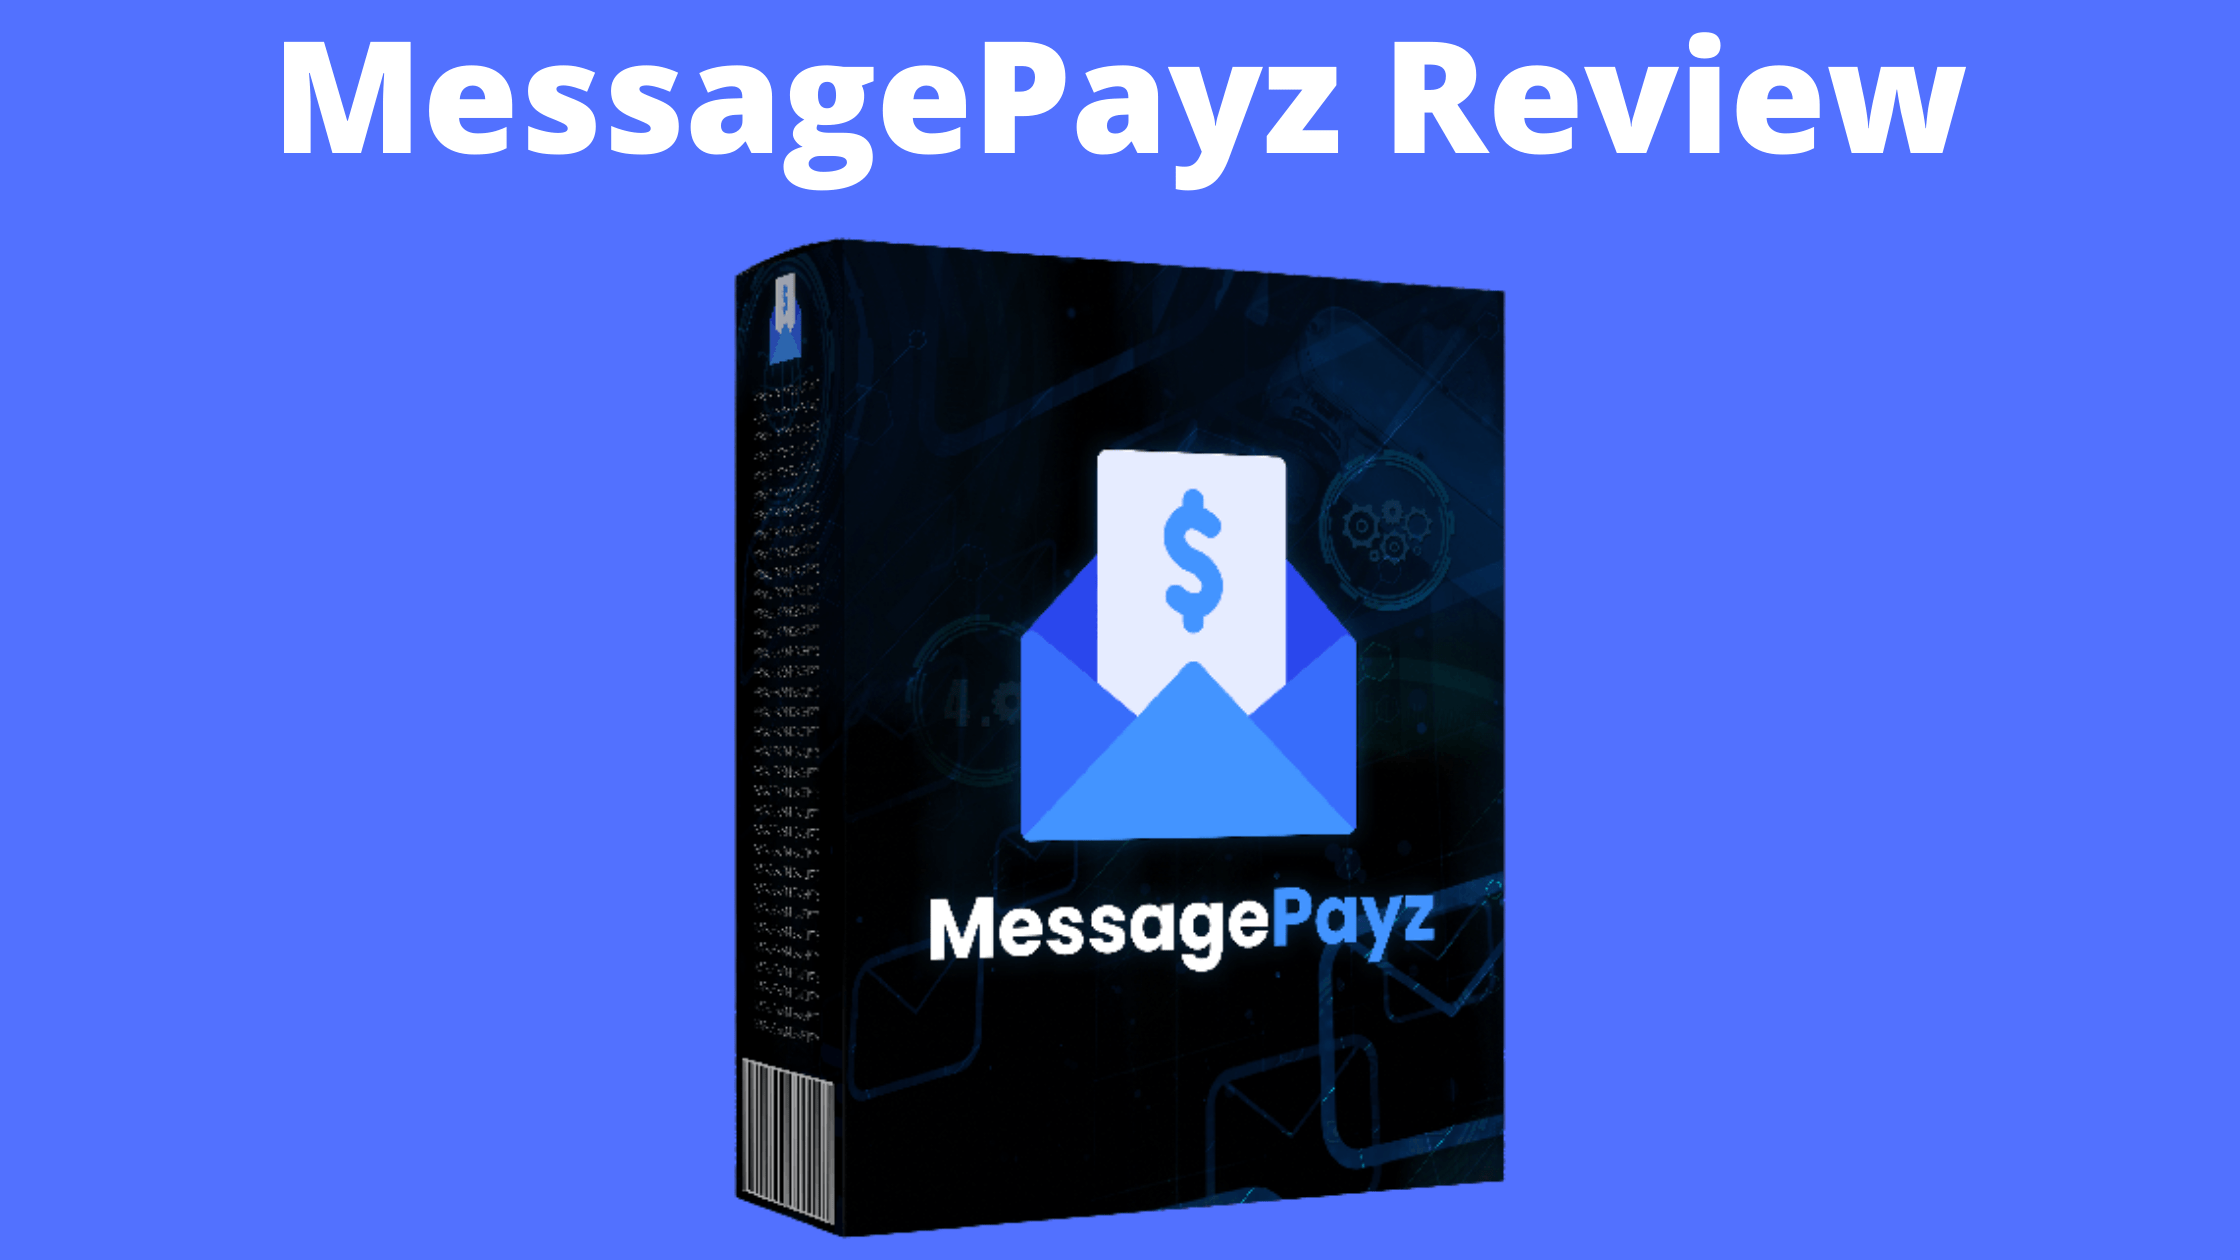 MessagePayz Review